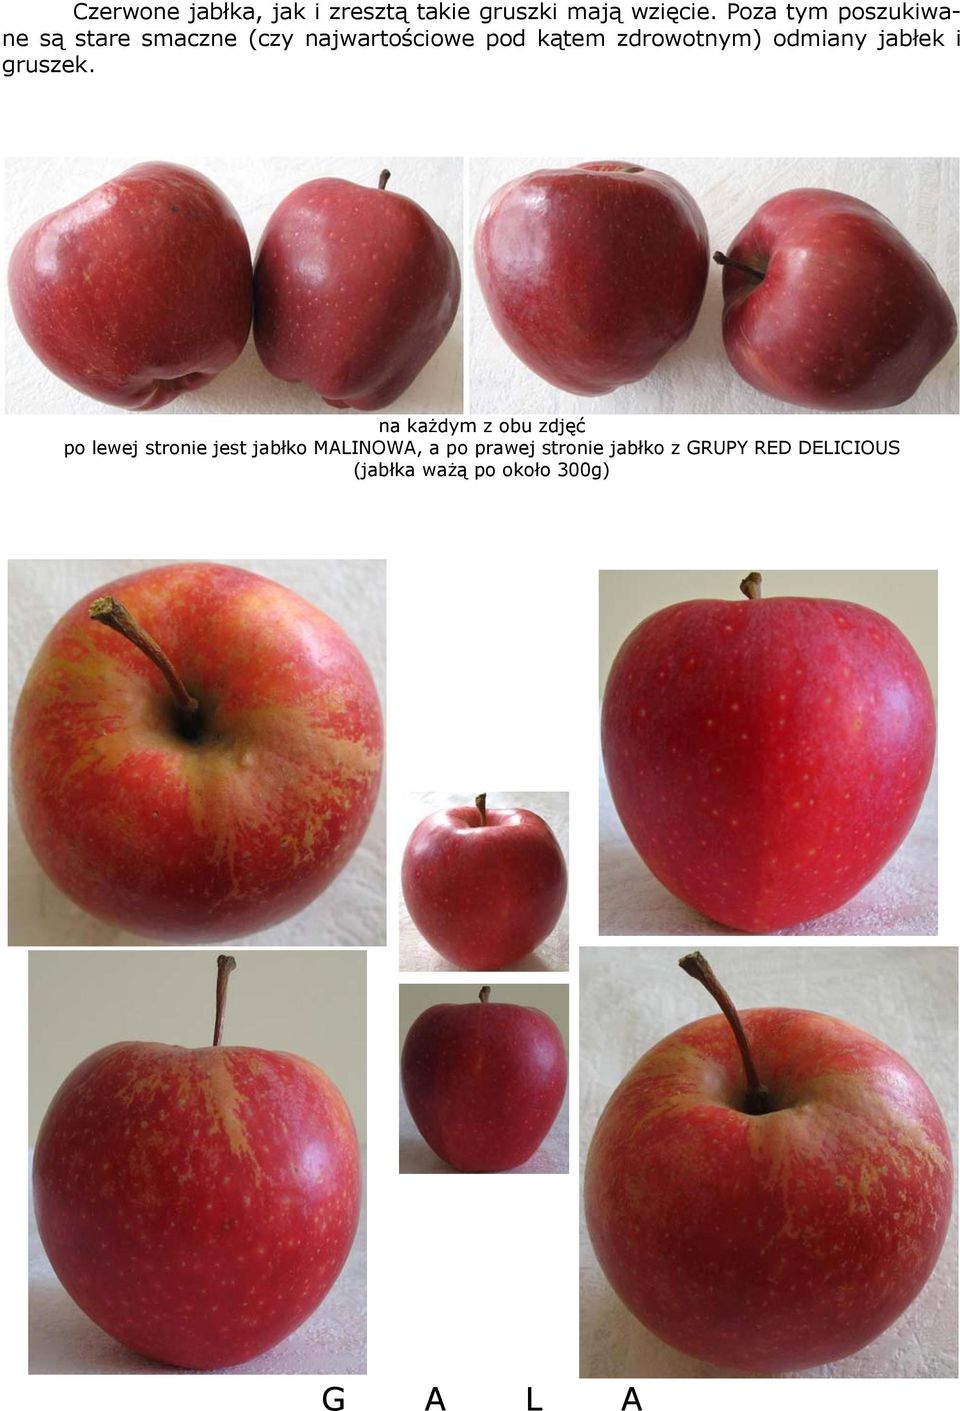 zdrowotnym) odmiany jabłek i gruszek.